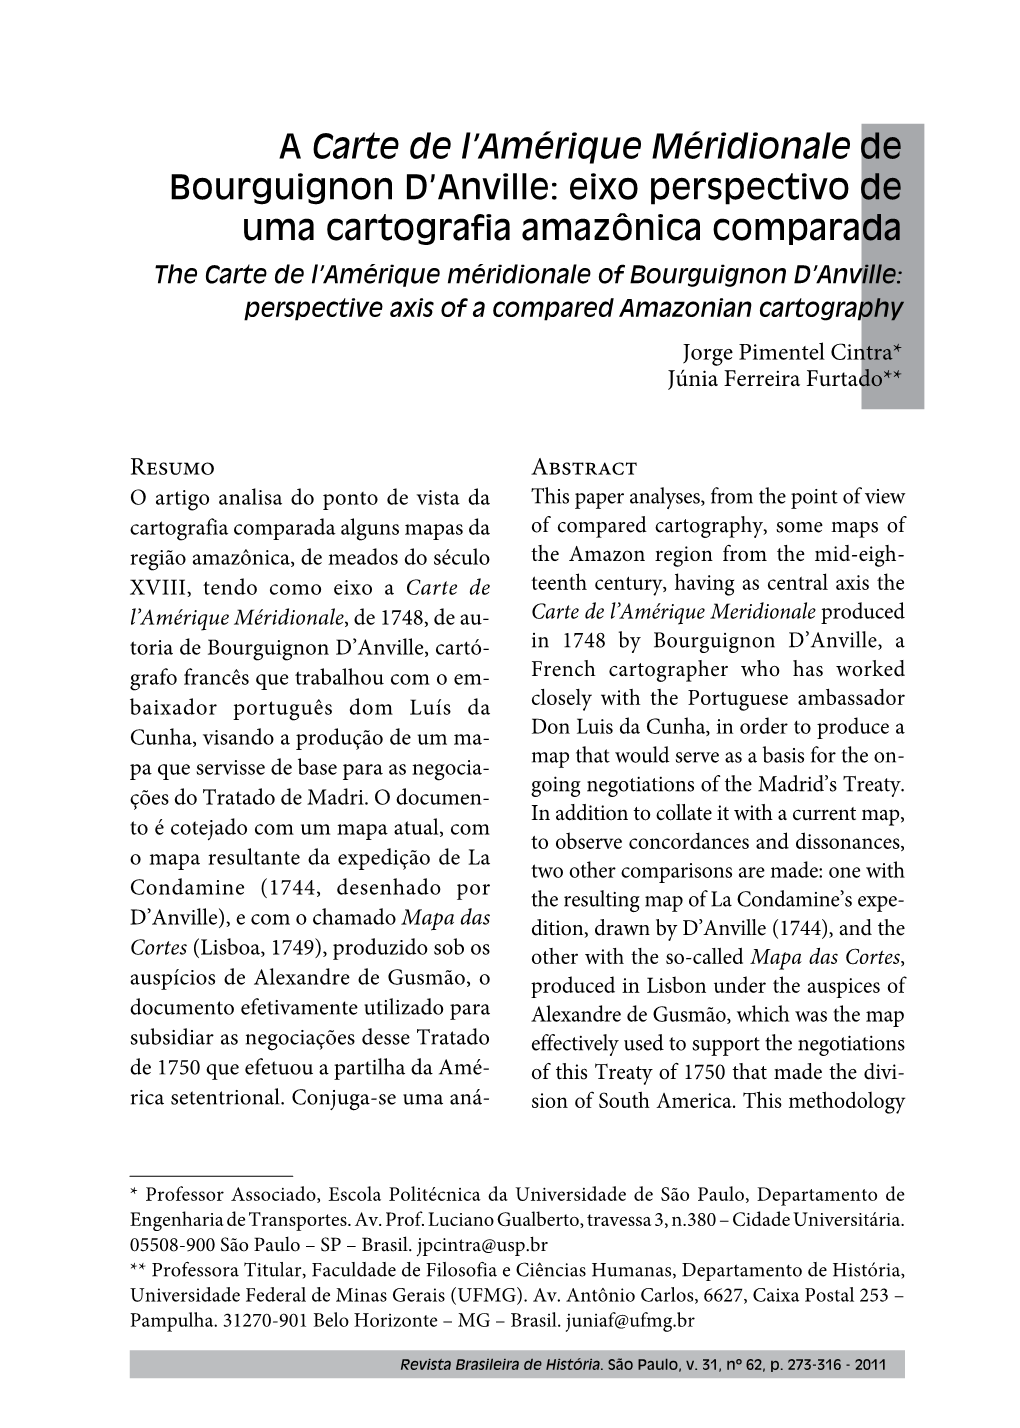 Bourguignon D'anville's Carte De L'amérique Méridionale: a Comparative Amazonian Cartography in Perspective